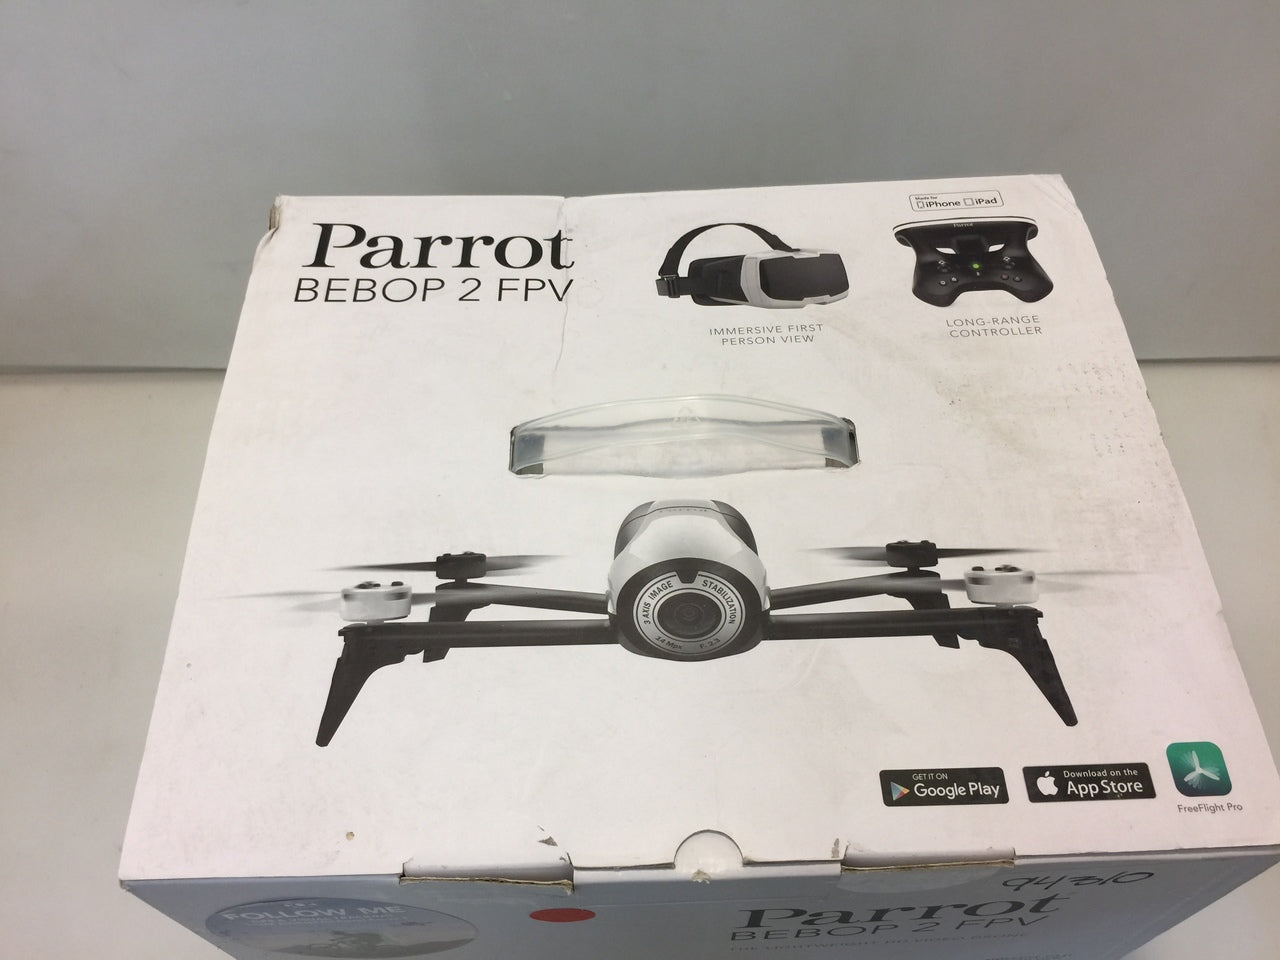 PA-PF726003AB-Drone Parrot Bebop 2 Blanc (PF726003AB)